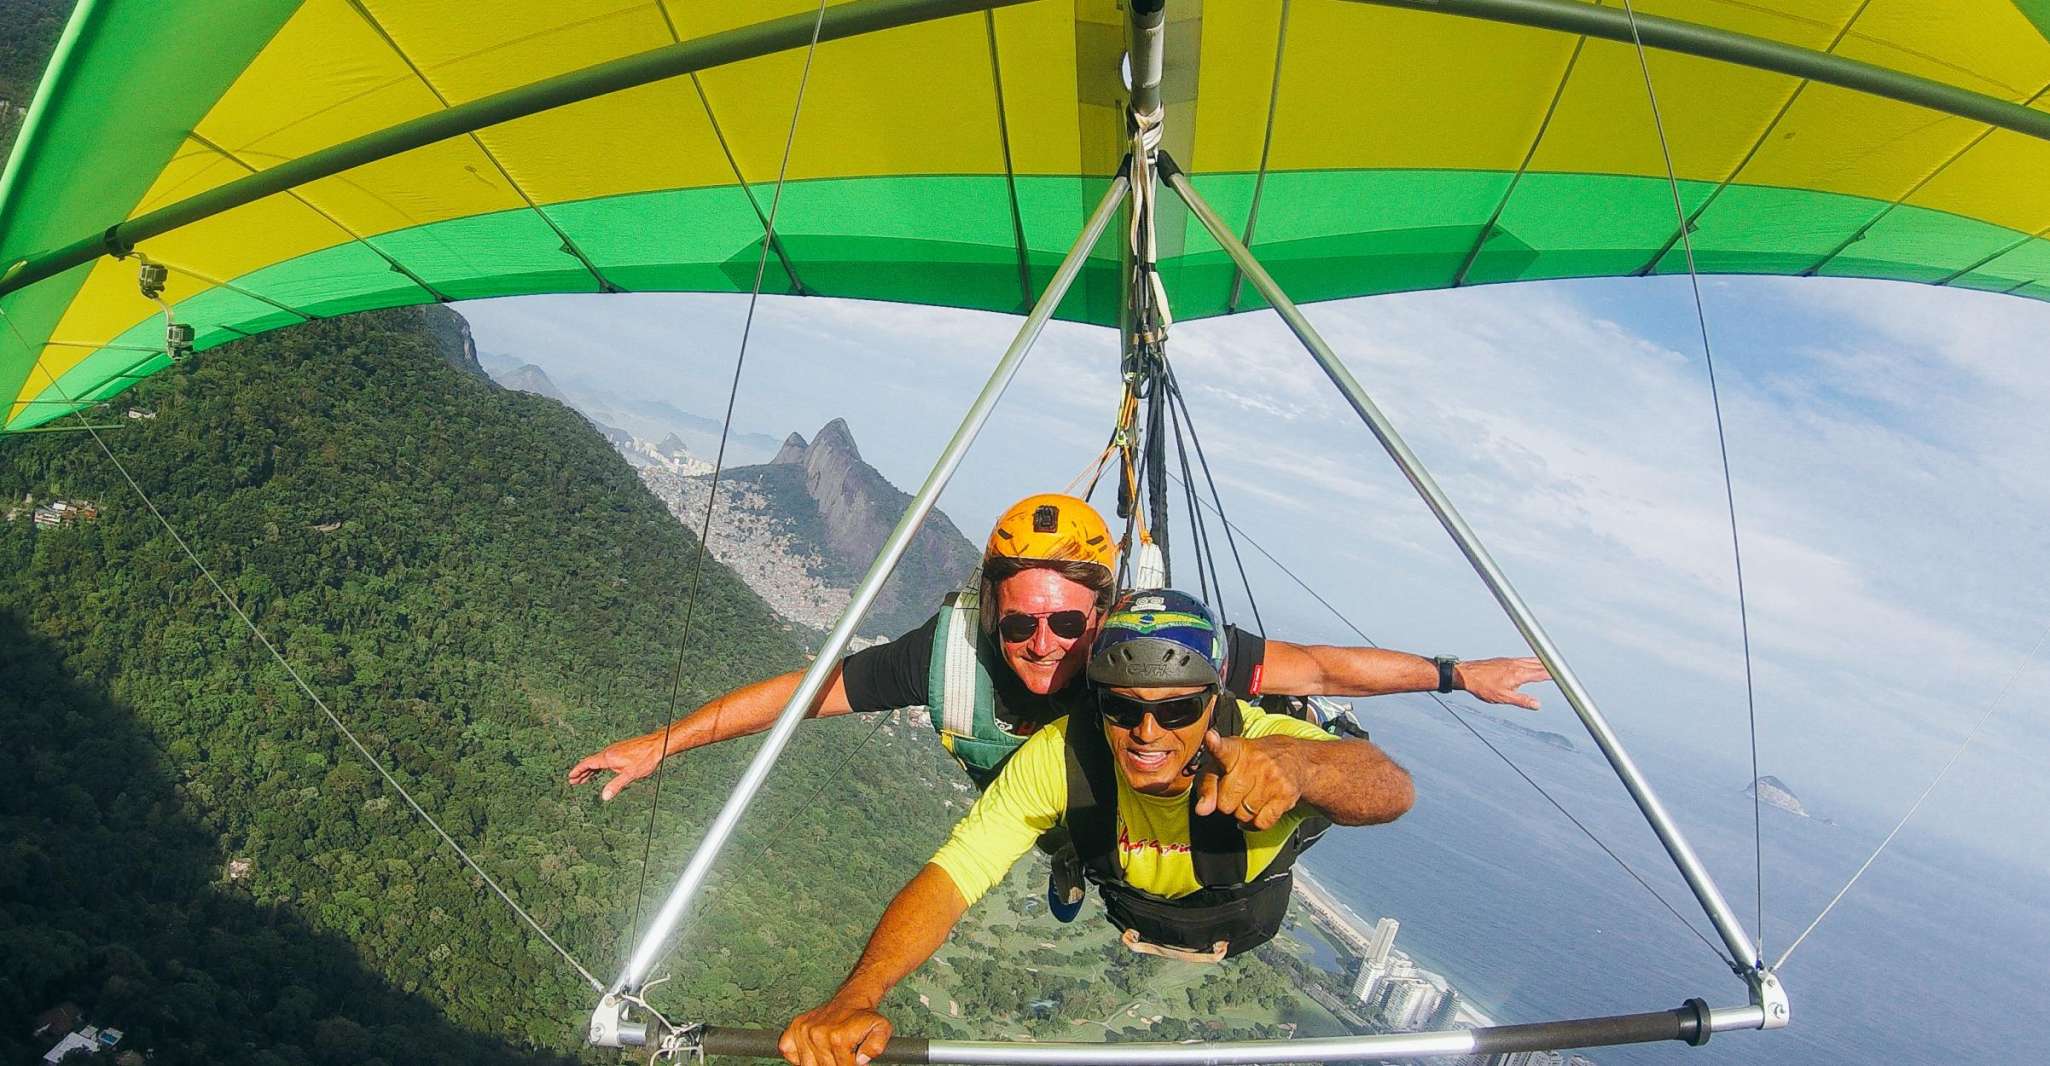 Rio de Janeiro, Hang Gliding Tandem Flight - Housity